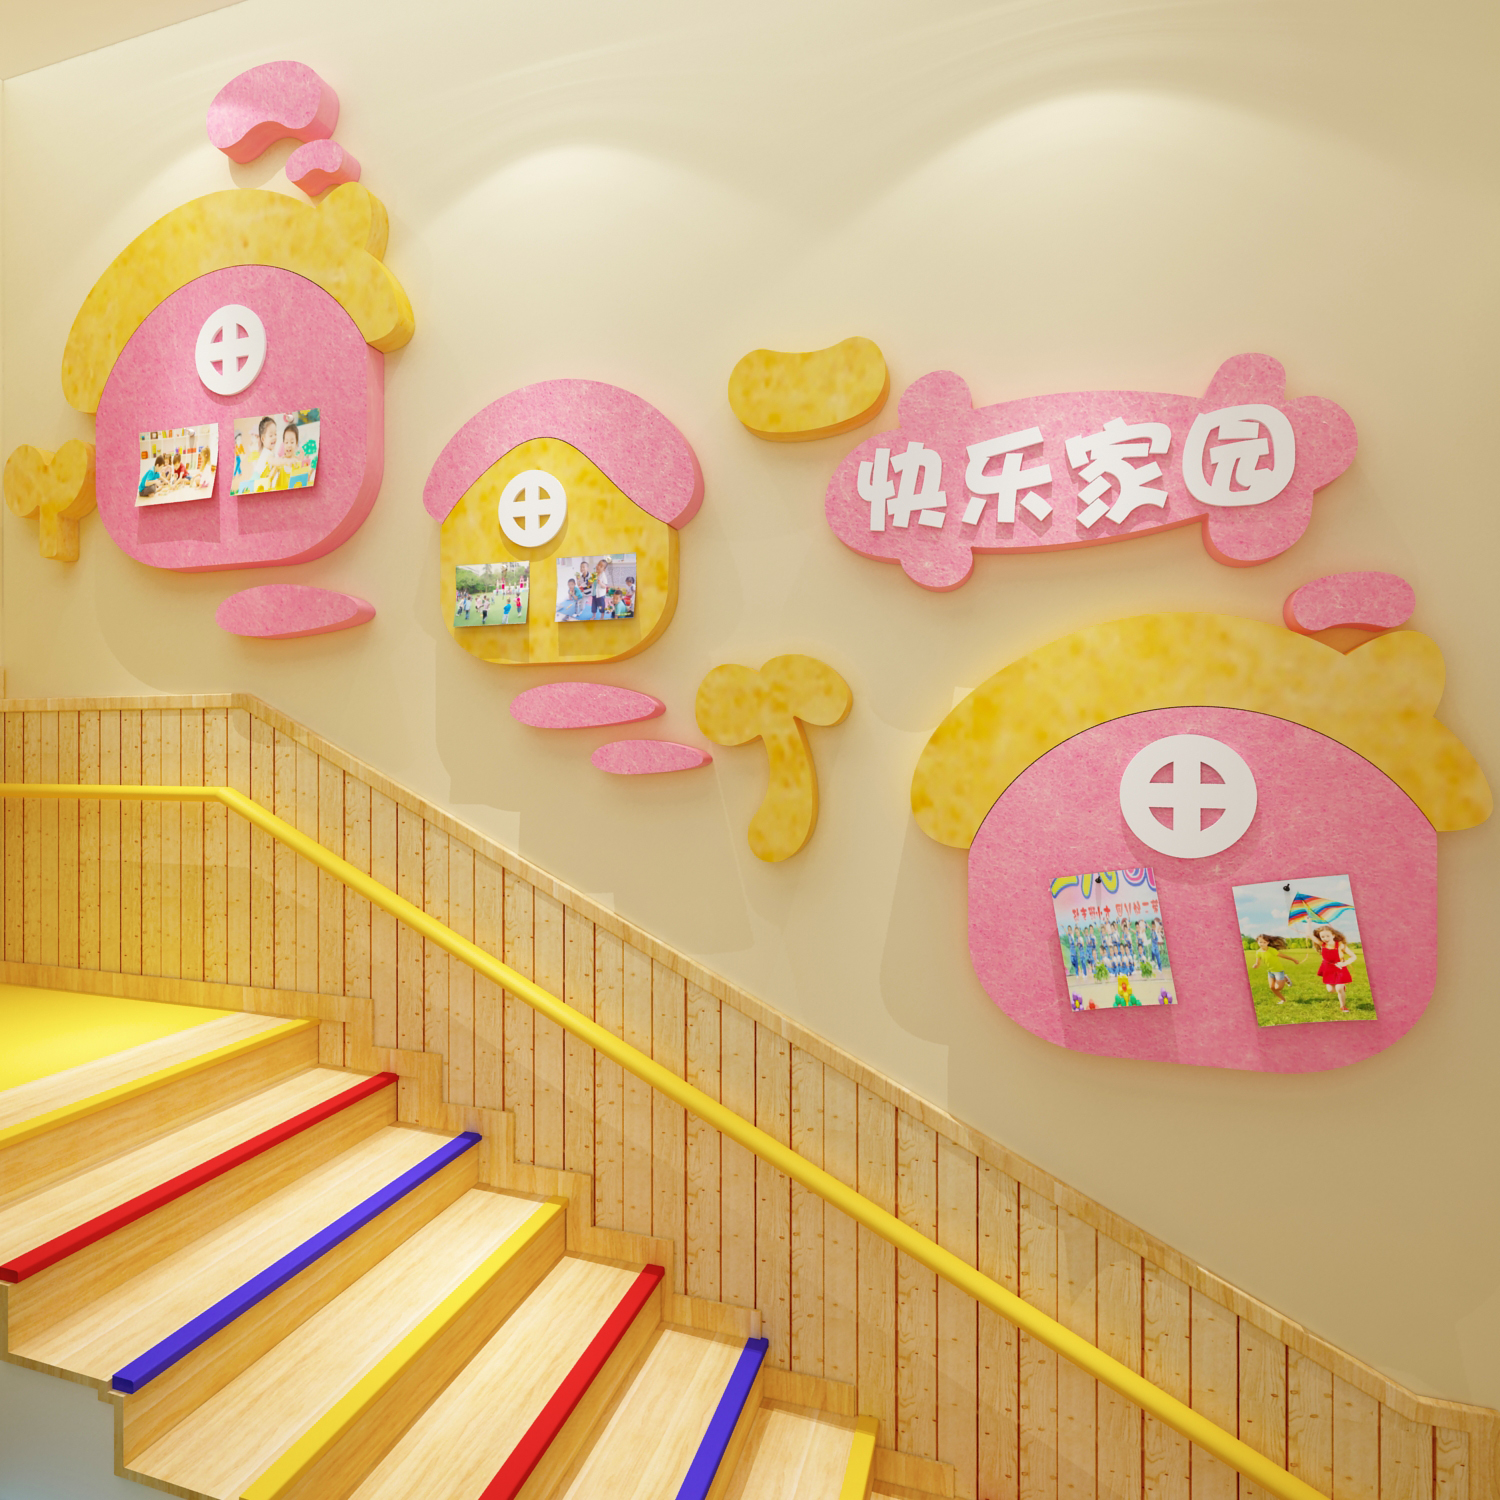 毛毡板墙贴教室背景布置幼儿园环创主题成品走廊楼梯大厅文化装饰